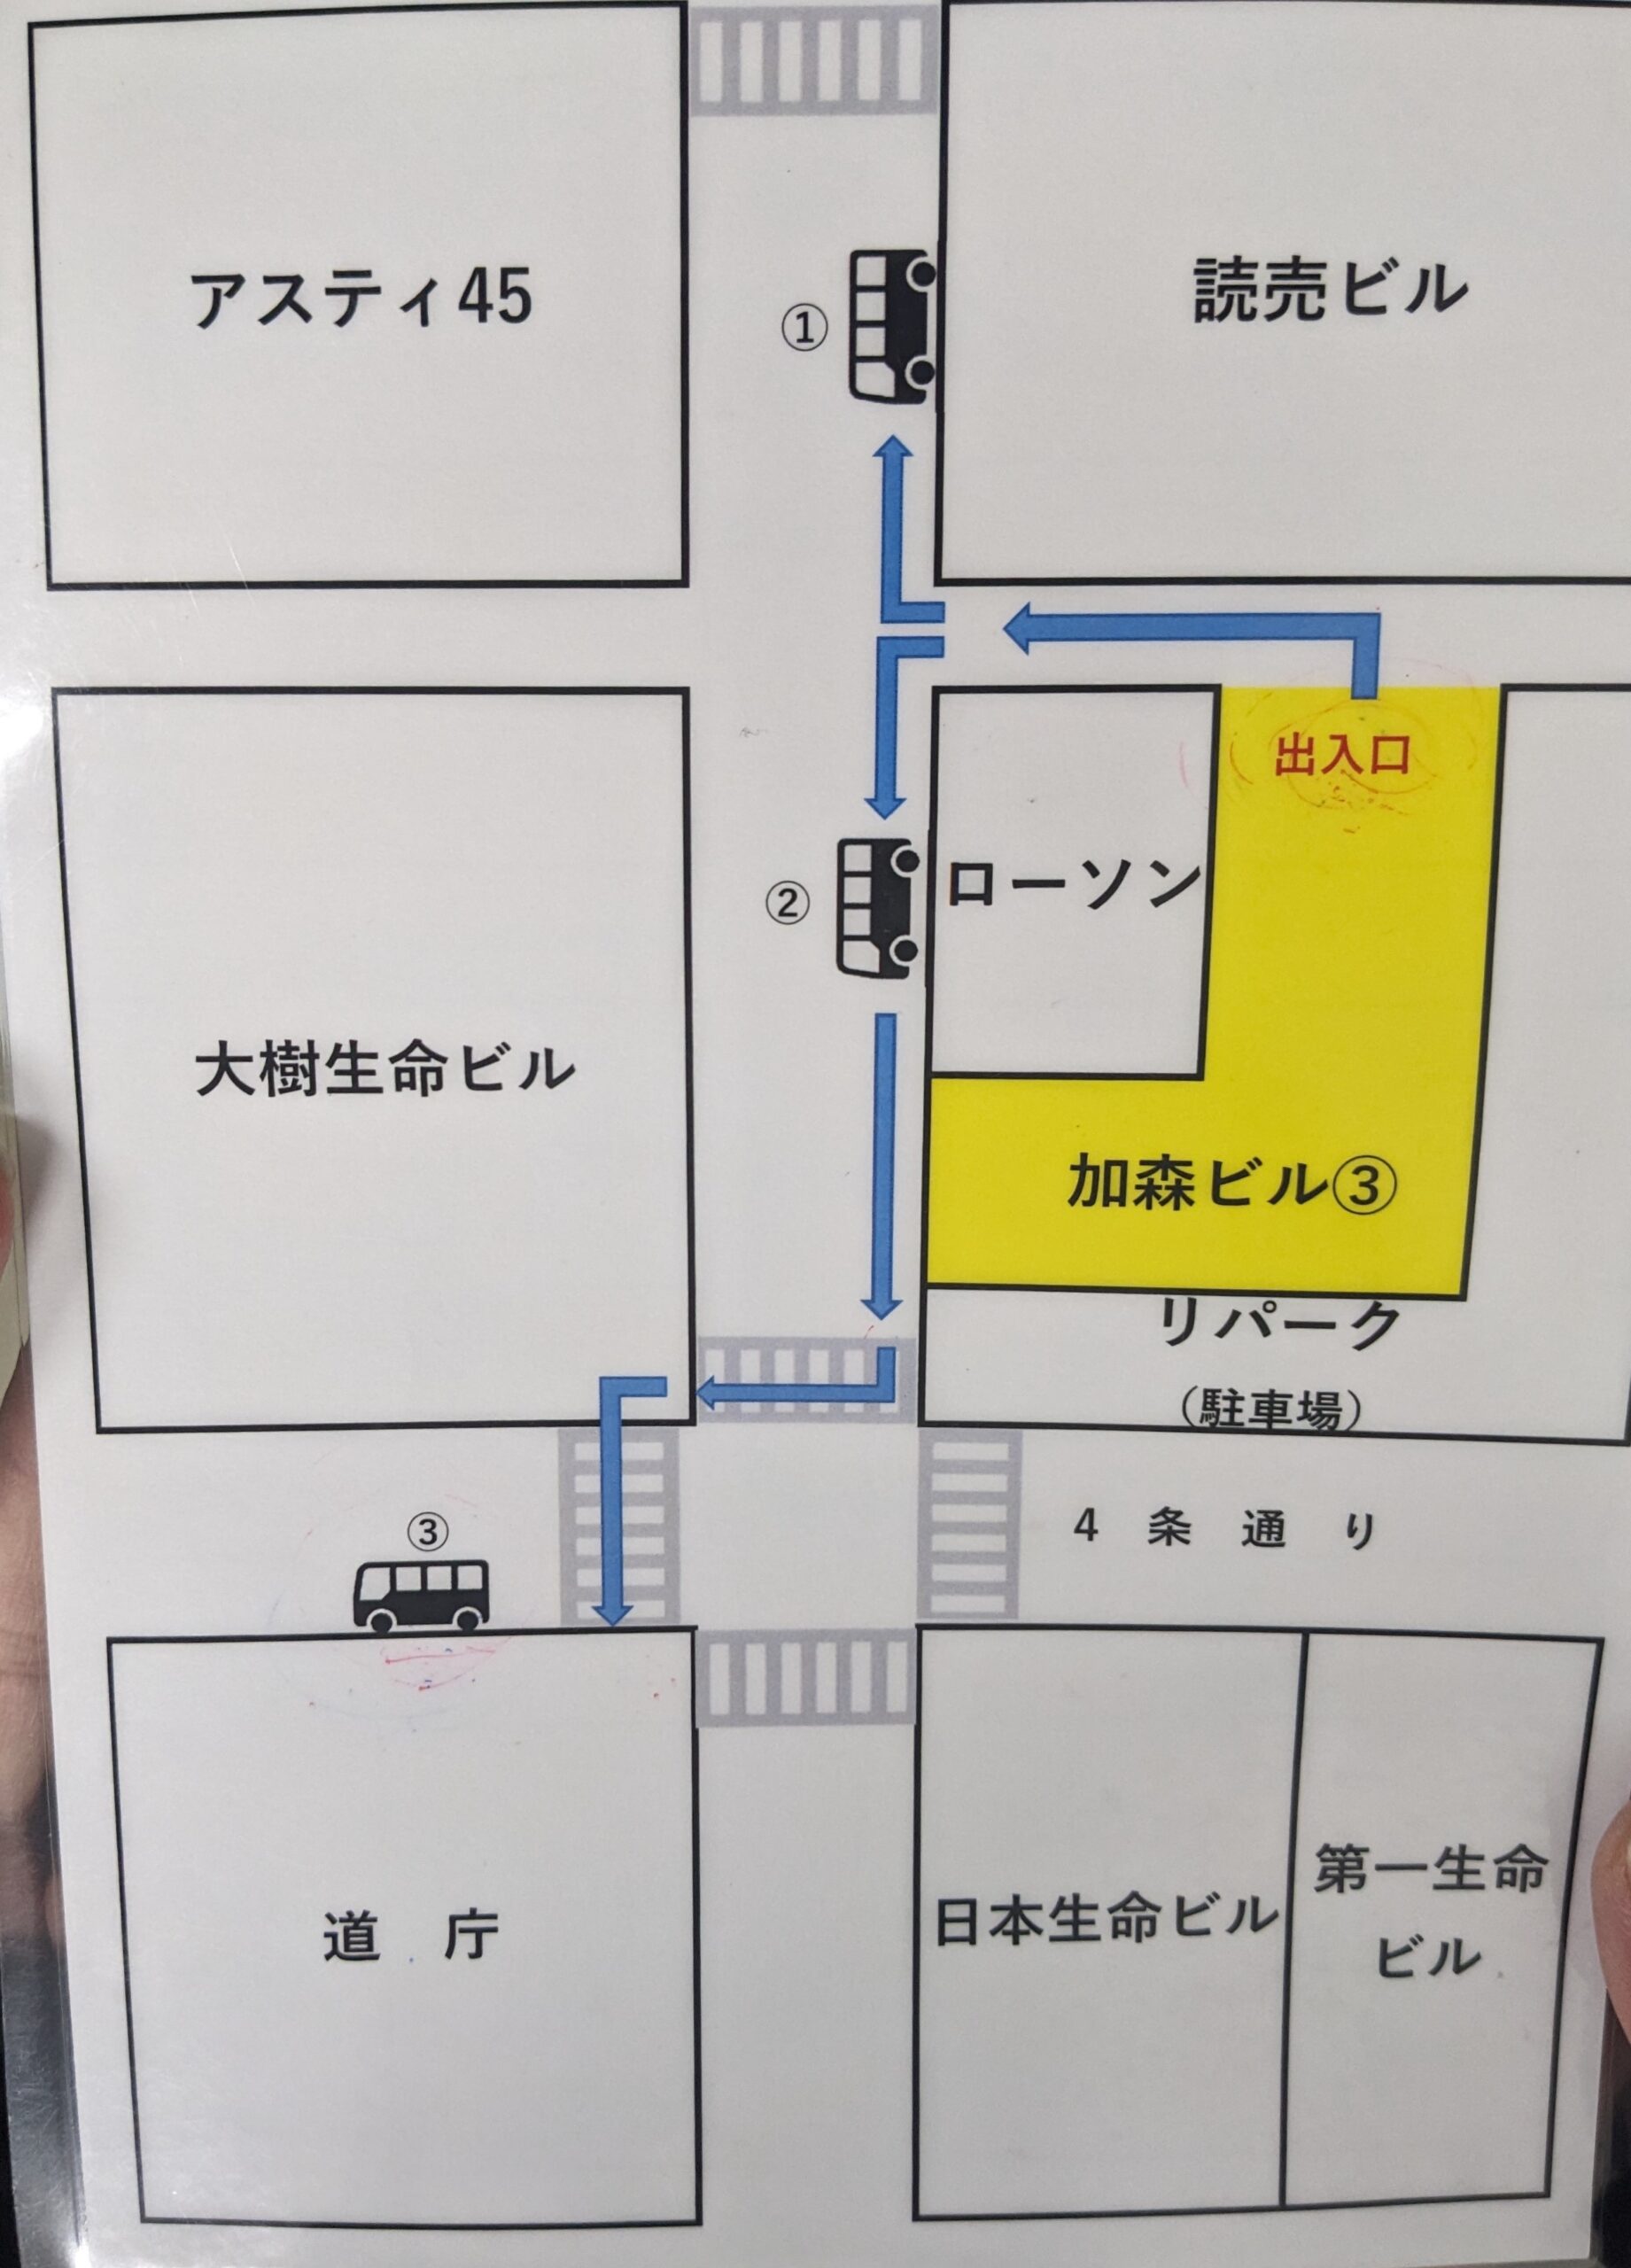 バス乗り場へのマップ